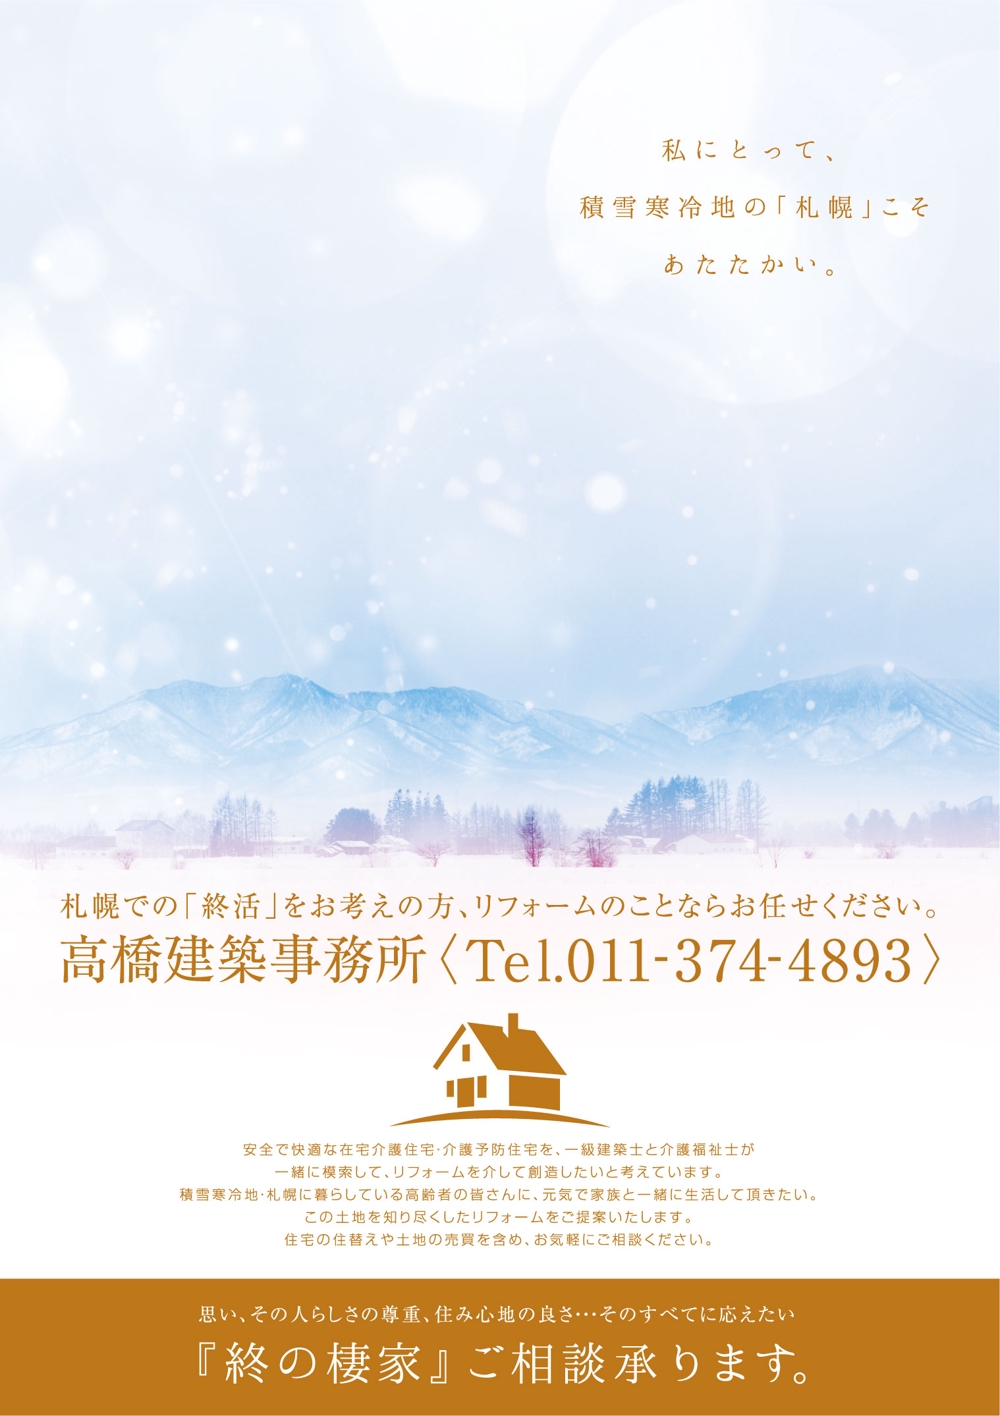 終の棲家を創造するリフォーム札幌のポスターデザイン